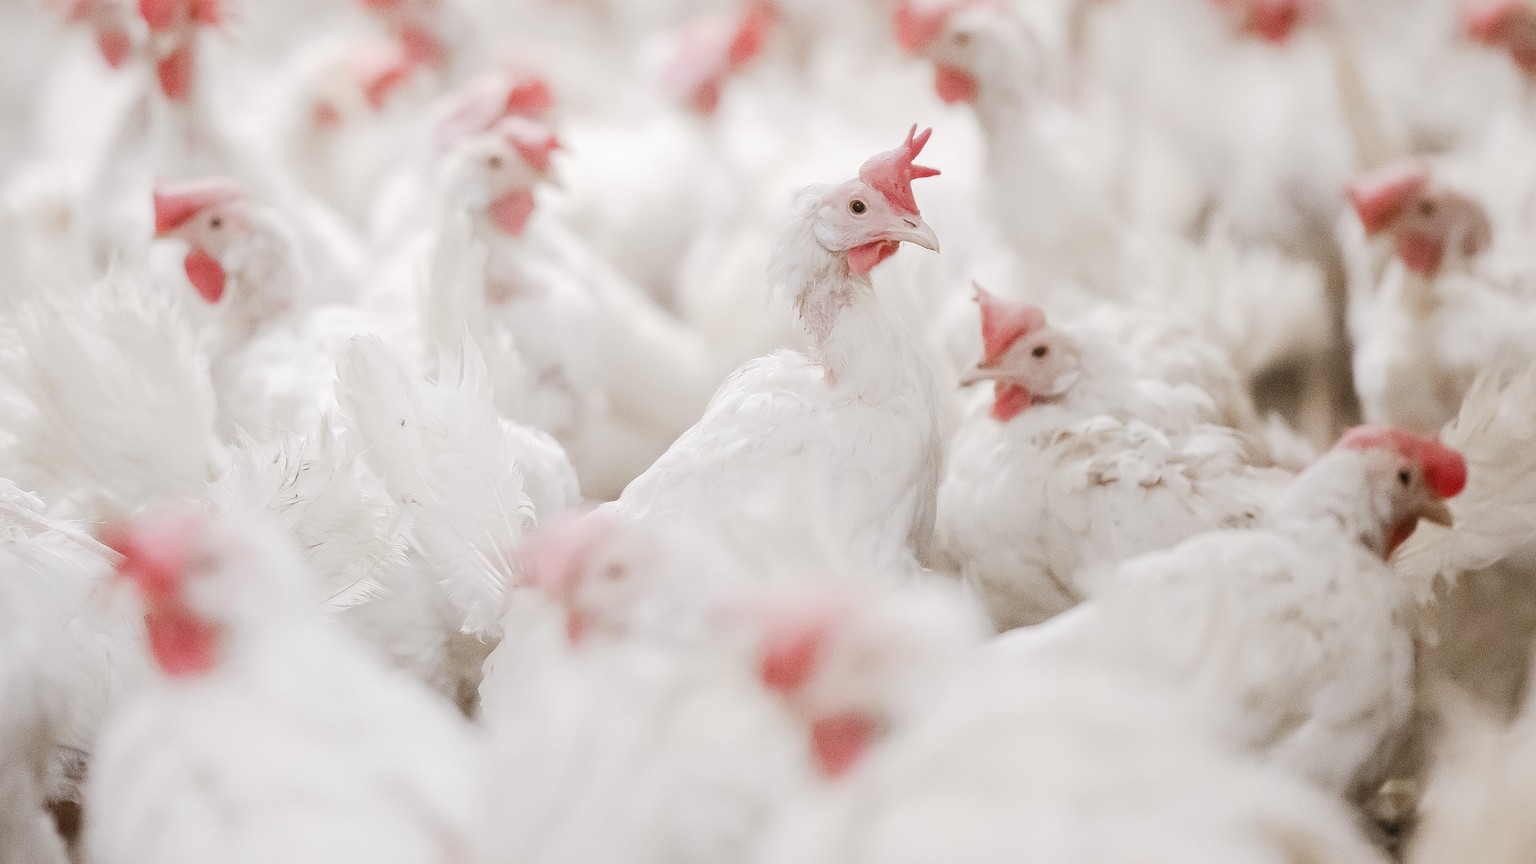 bald soll es keine braunen hühnereier mehr geben in deutschland – was dahintersteckt